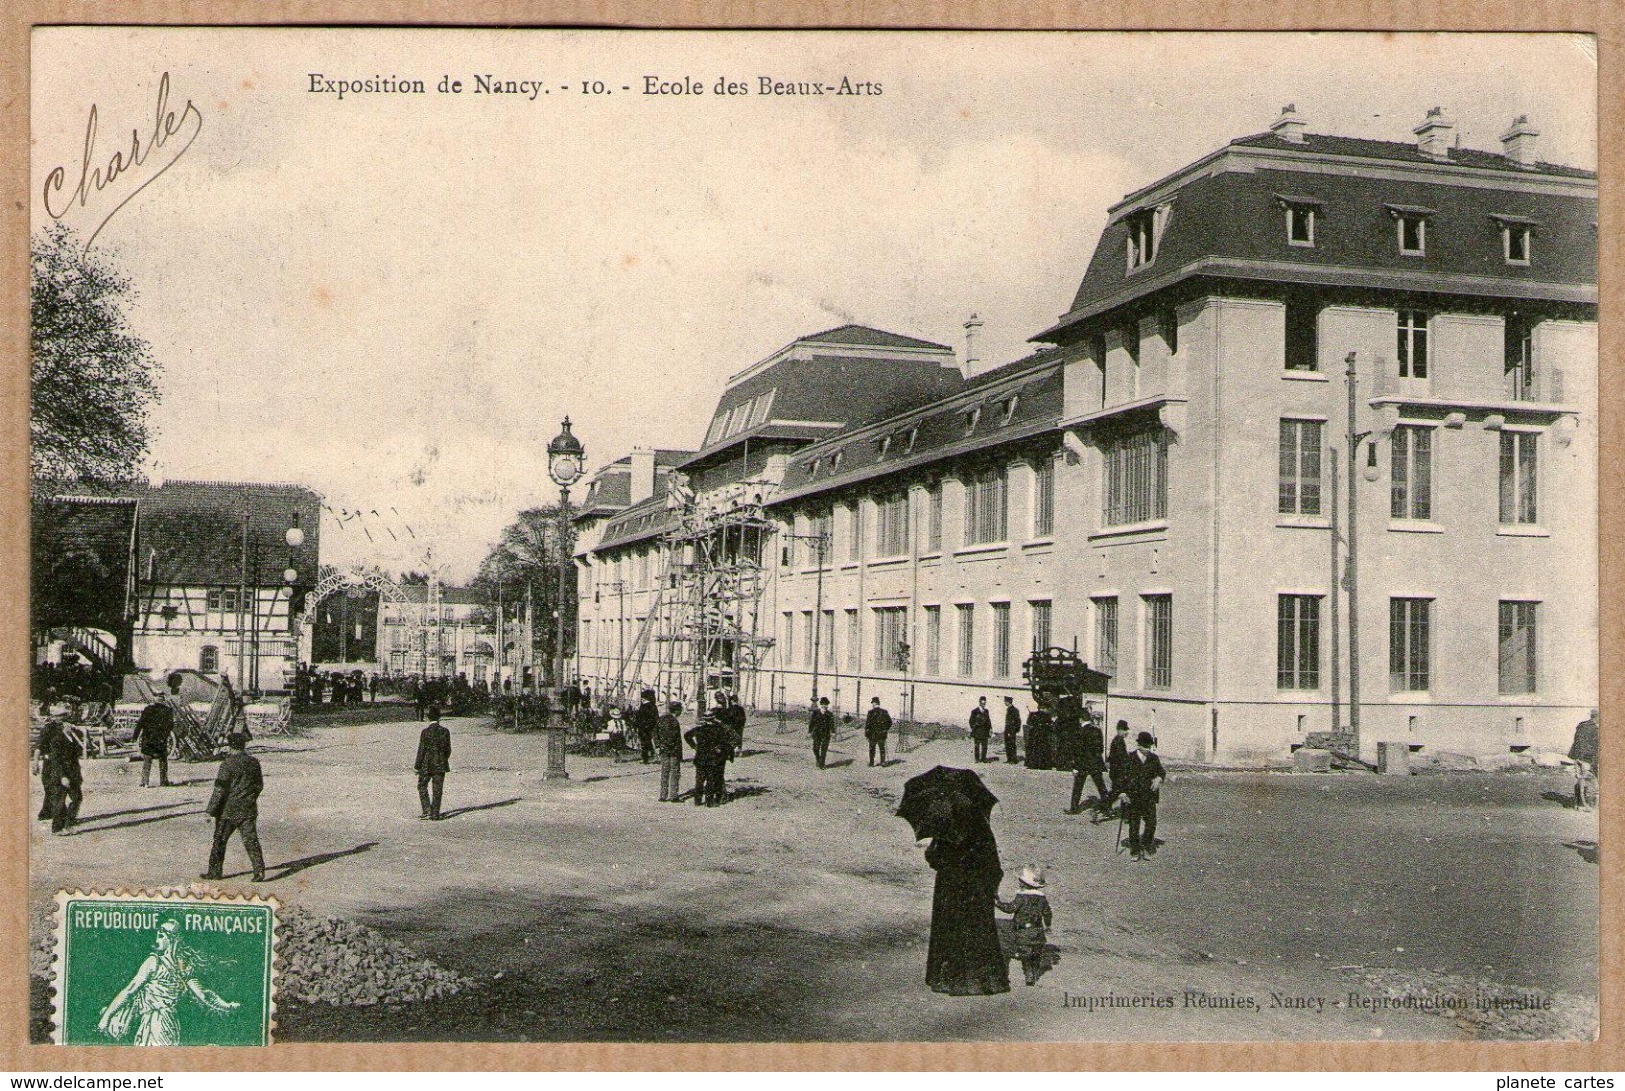 54 / Lot de 10 cartes : NANCY - Exposition de Nancy en 1909 (toboggan, guignol, petit chemin de fer, ferme lorraine...)